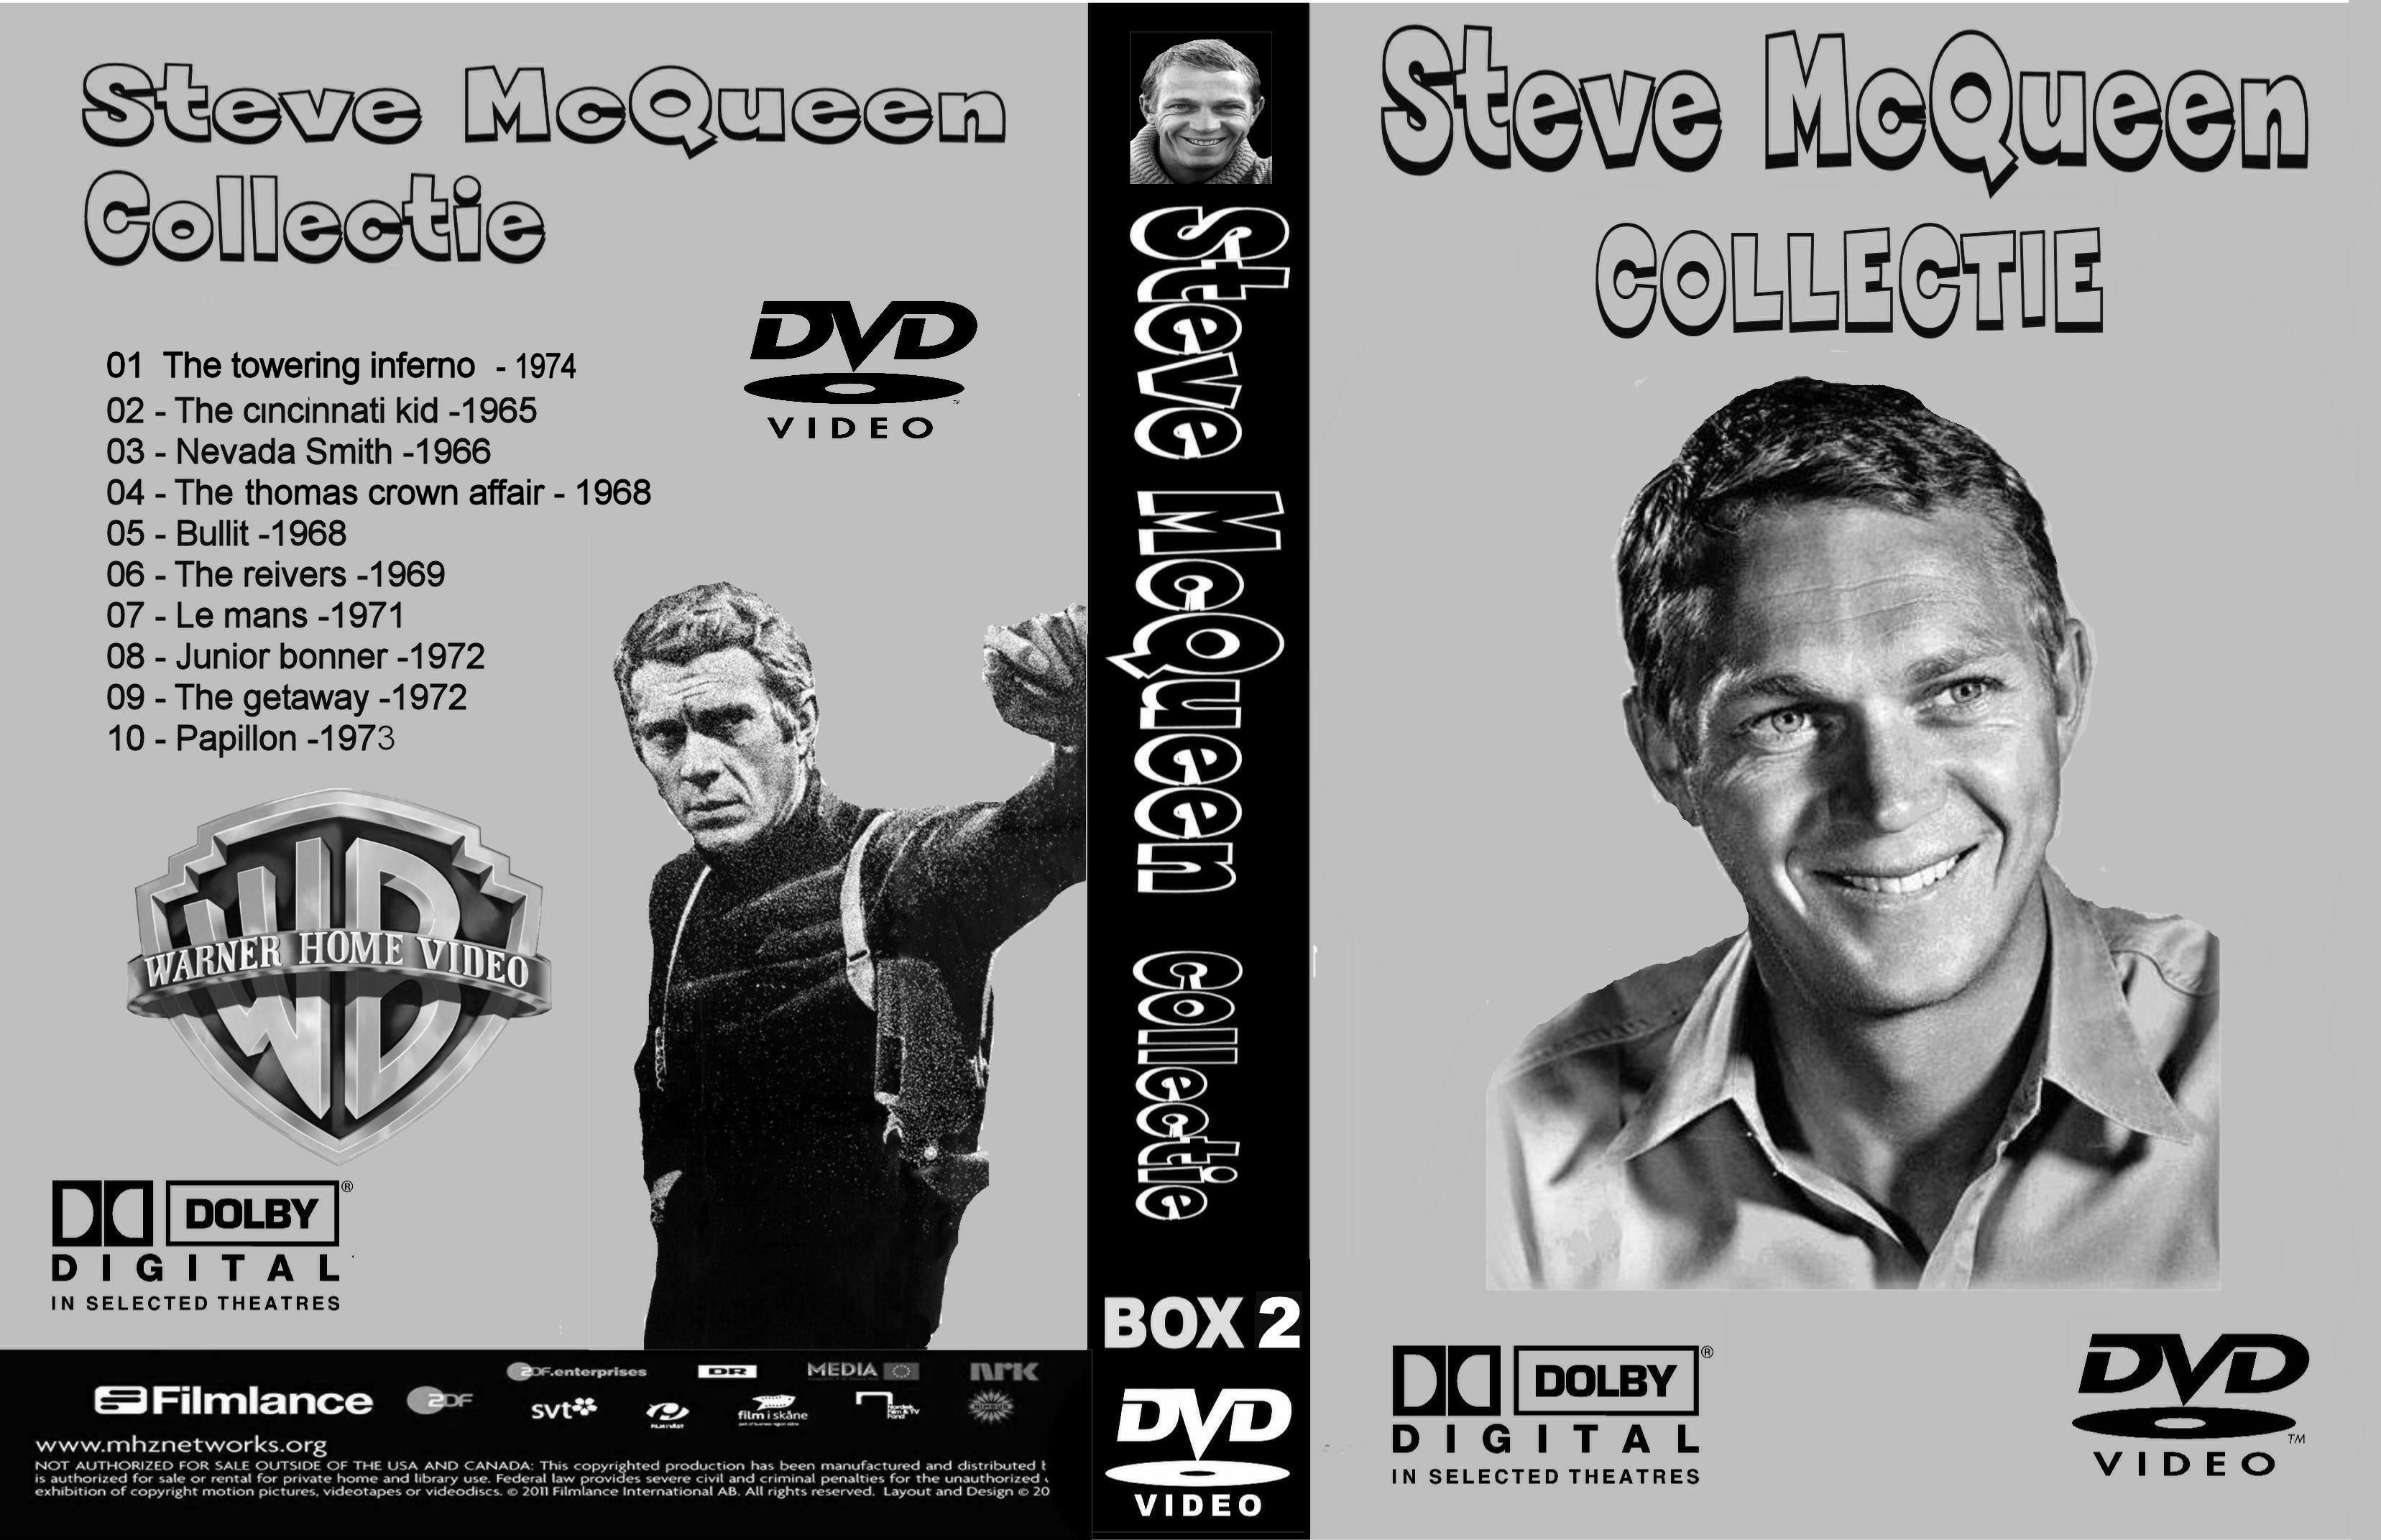 Steve McQueen Collectie BoX 2 DvD 6 van 10